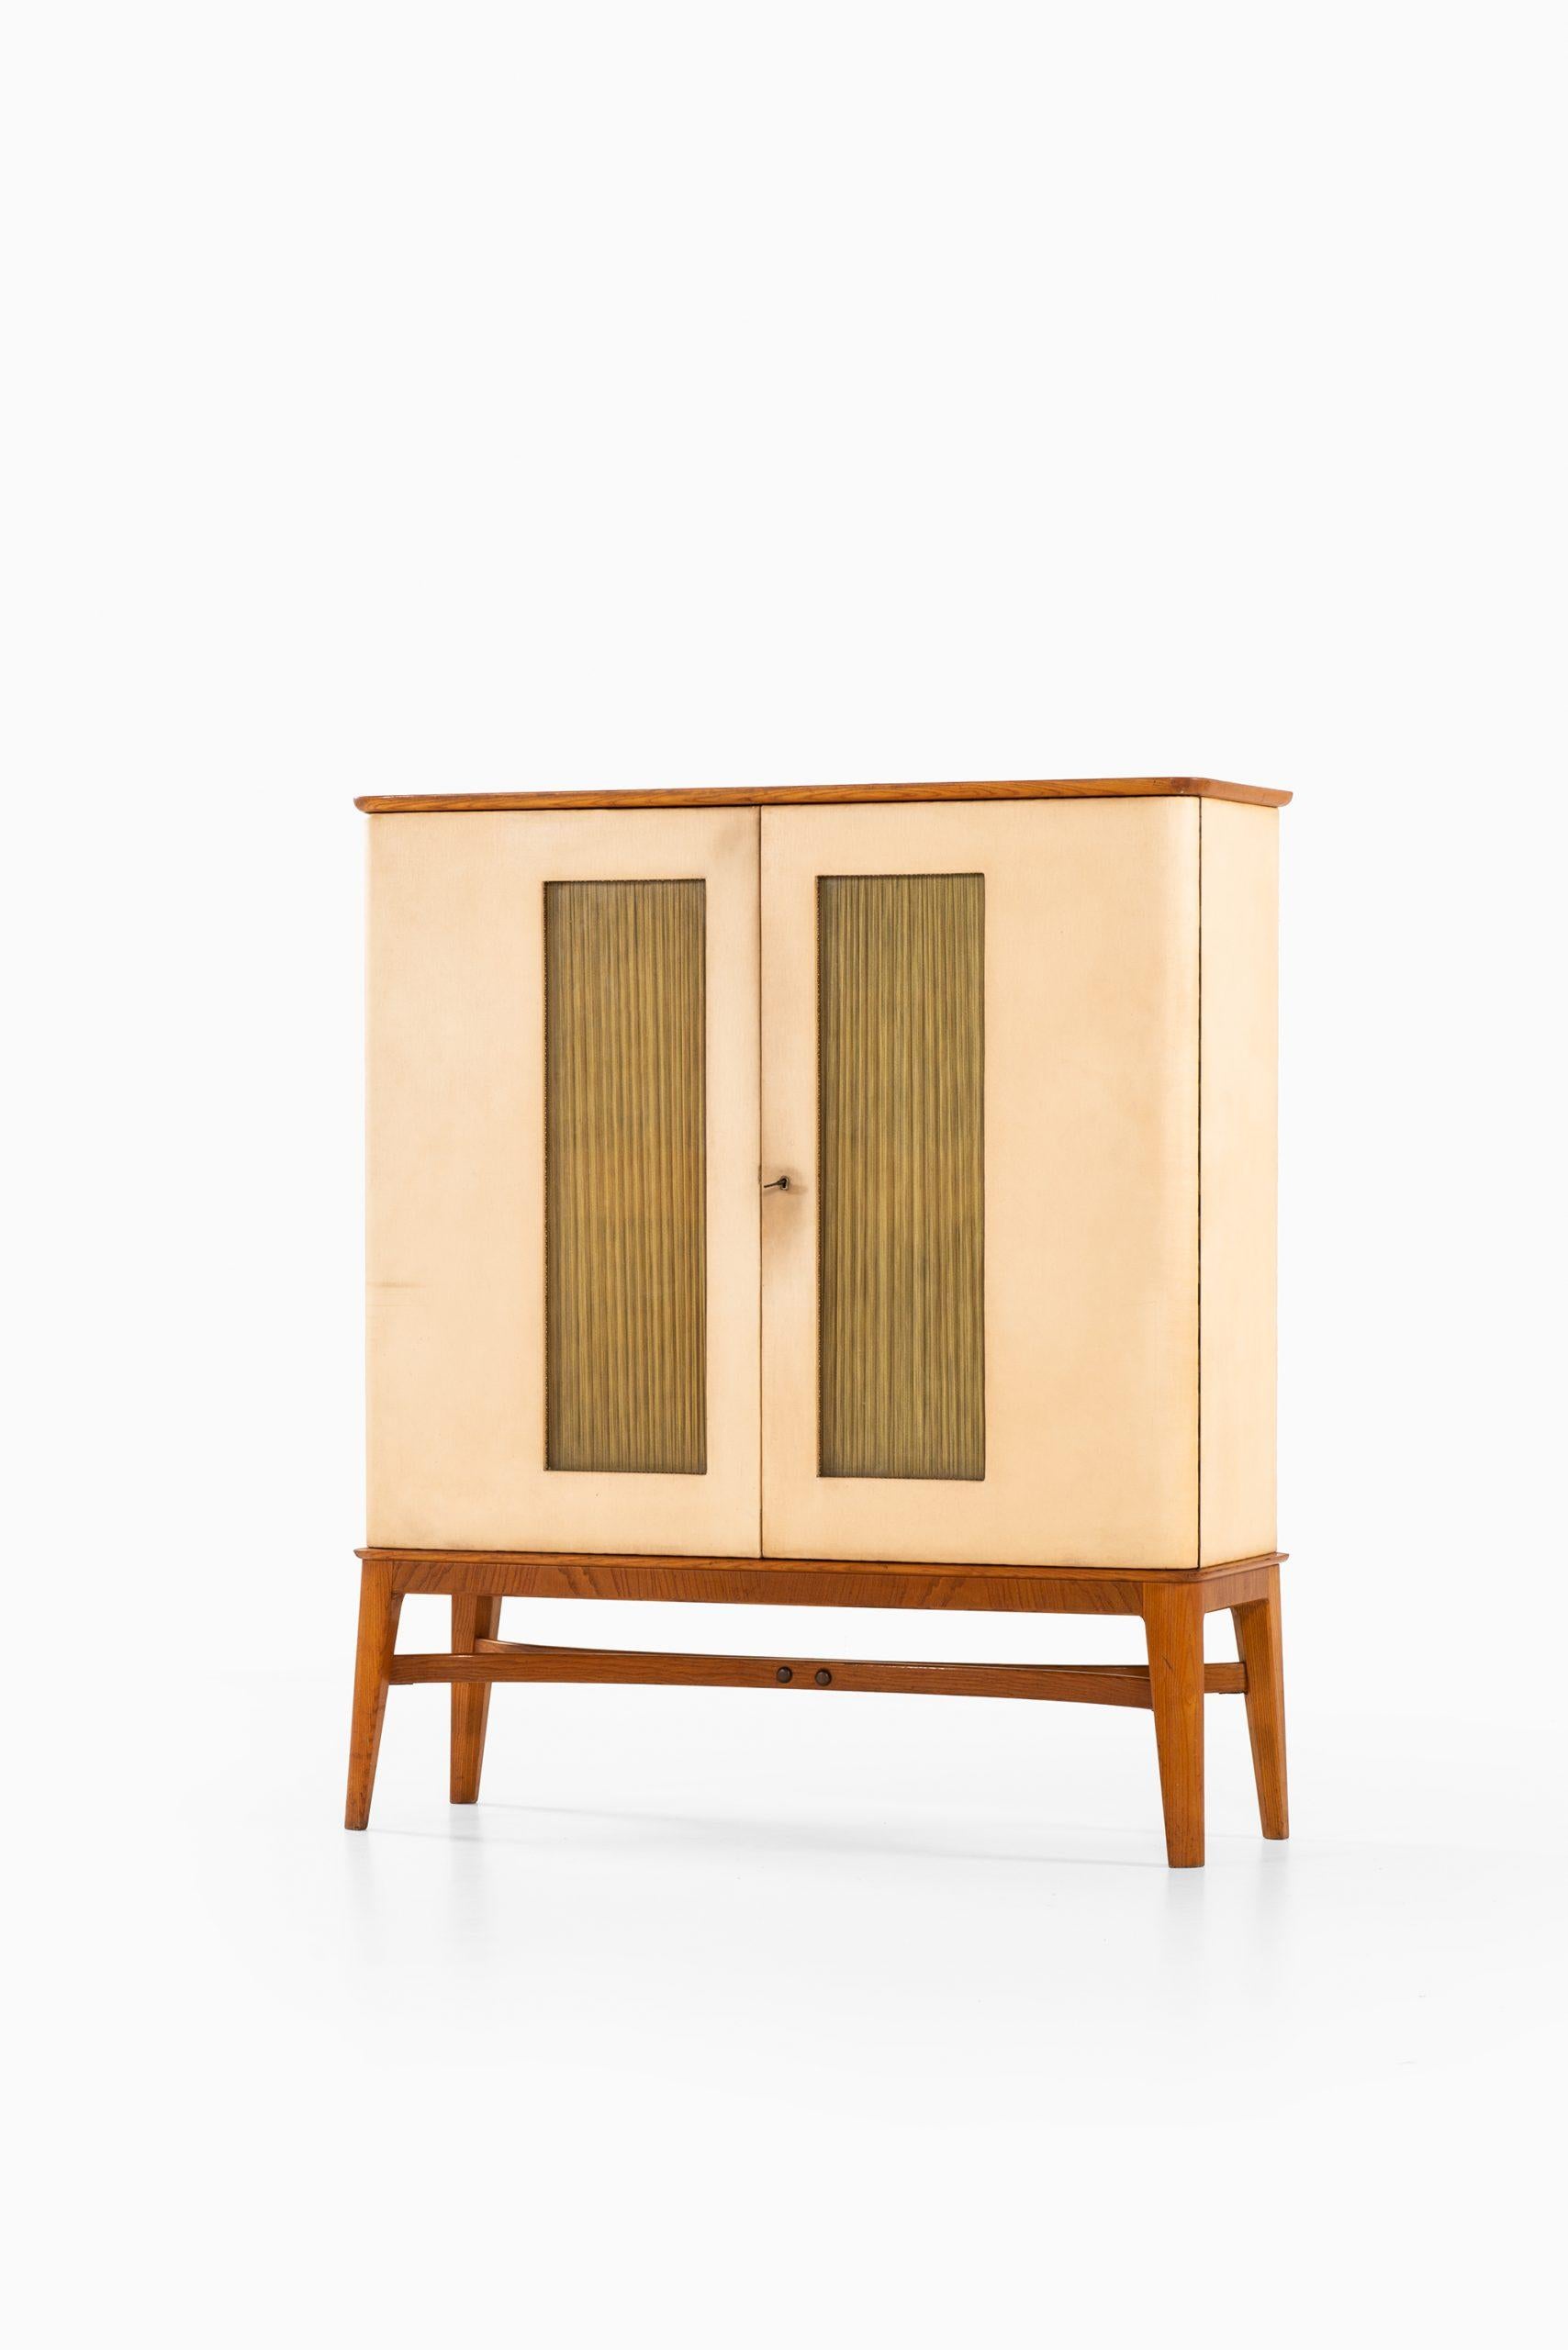 Cabinet très rare conçu par Otto Schulz. Produit par Boet en Suède.